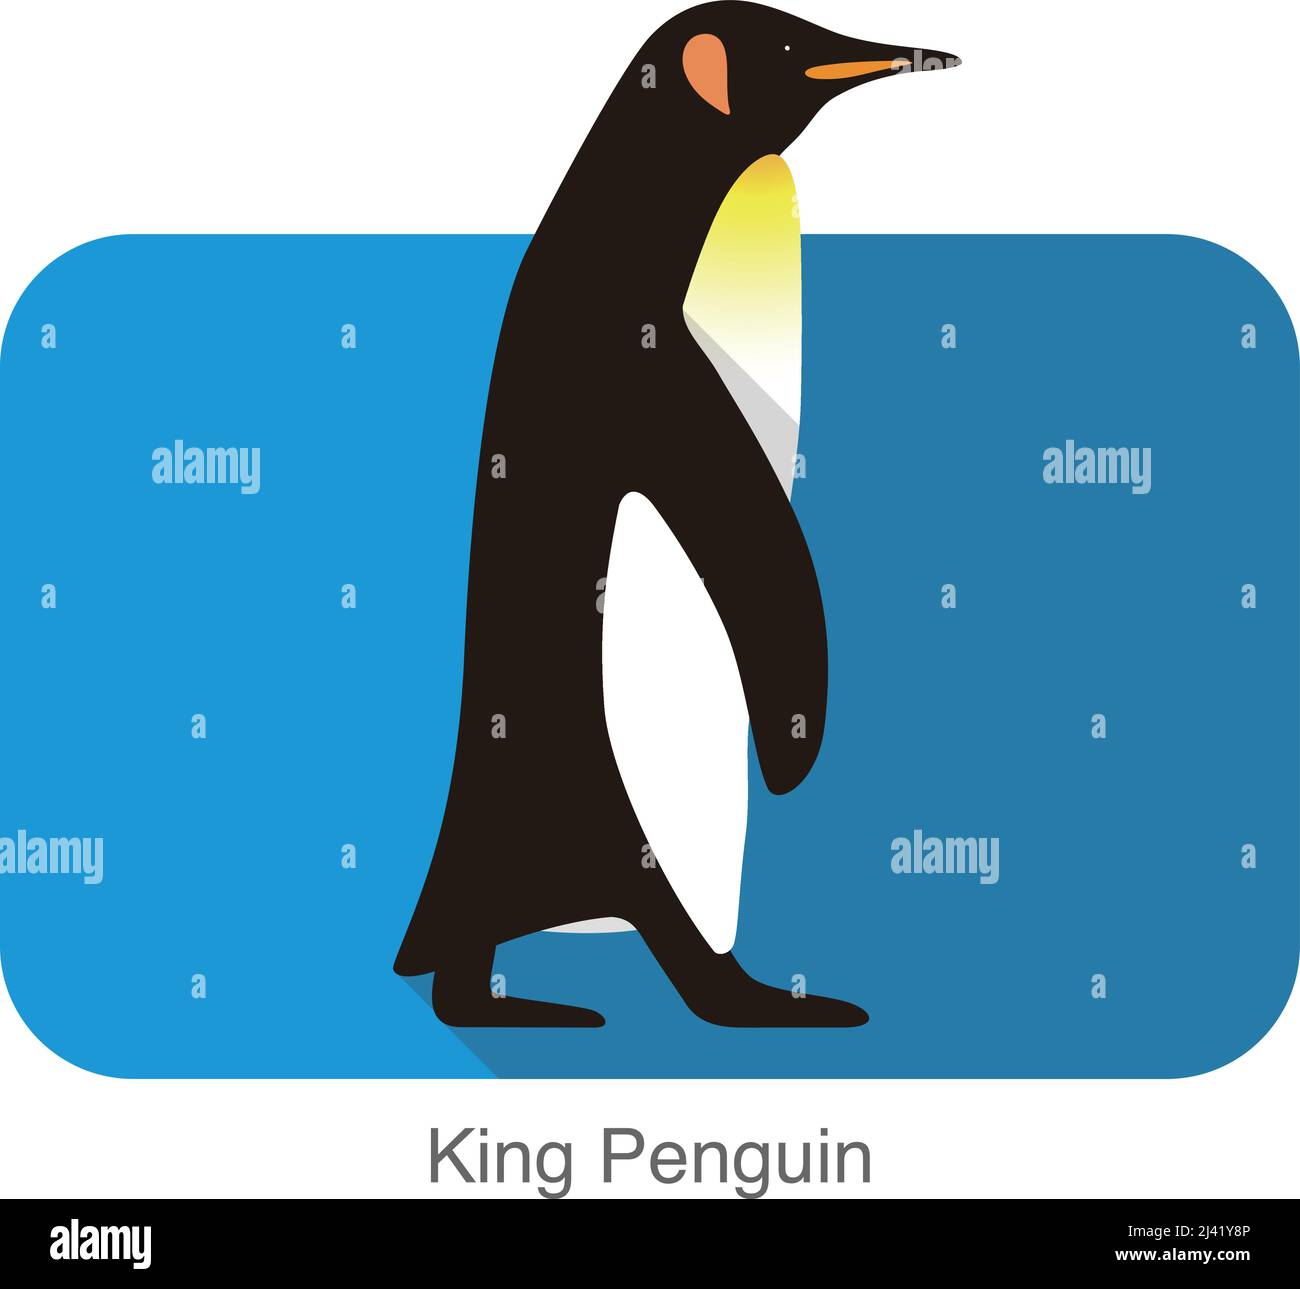 King Penguin walking, Penguin, série de semences vector illustration Illustration de Vecteur